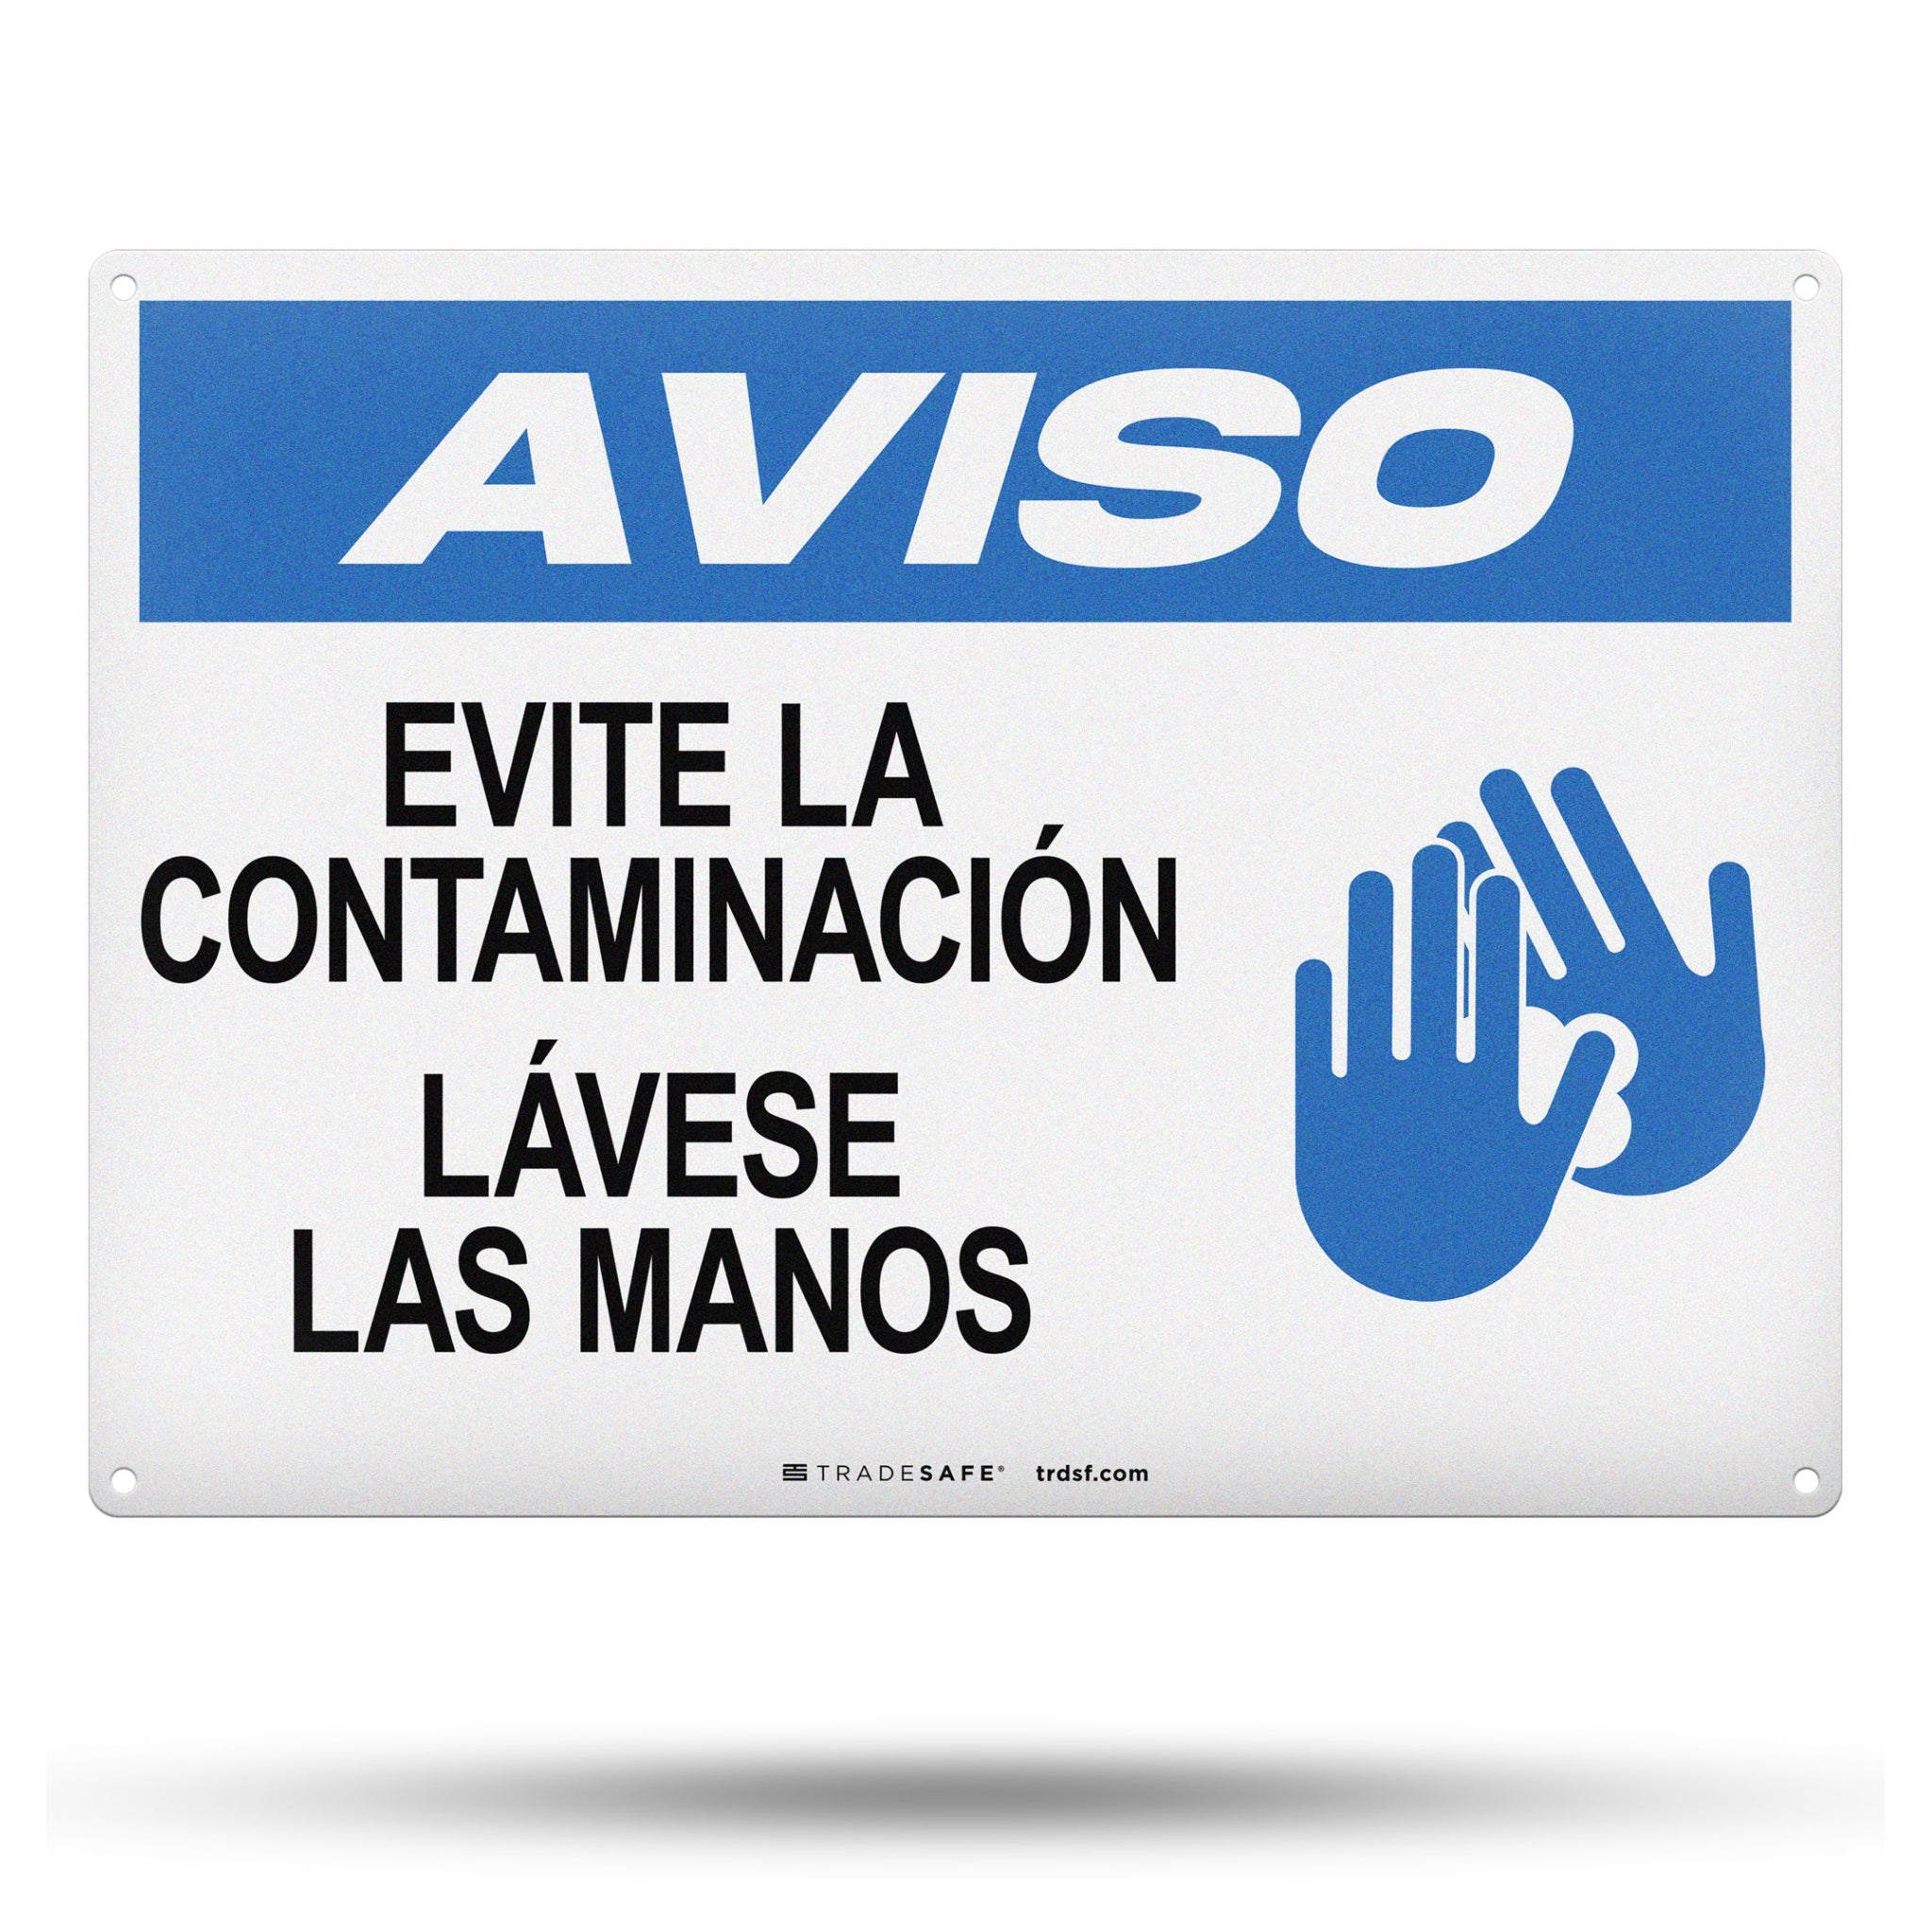 Evite La Contaminación Lávese Las Manos (Evite La Contaminación Lávese Las Manos) Letrero De Aluminio